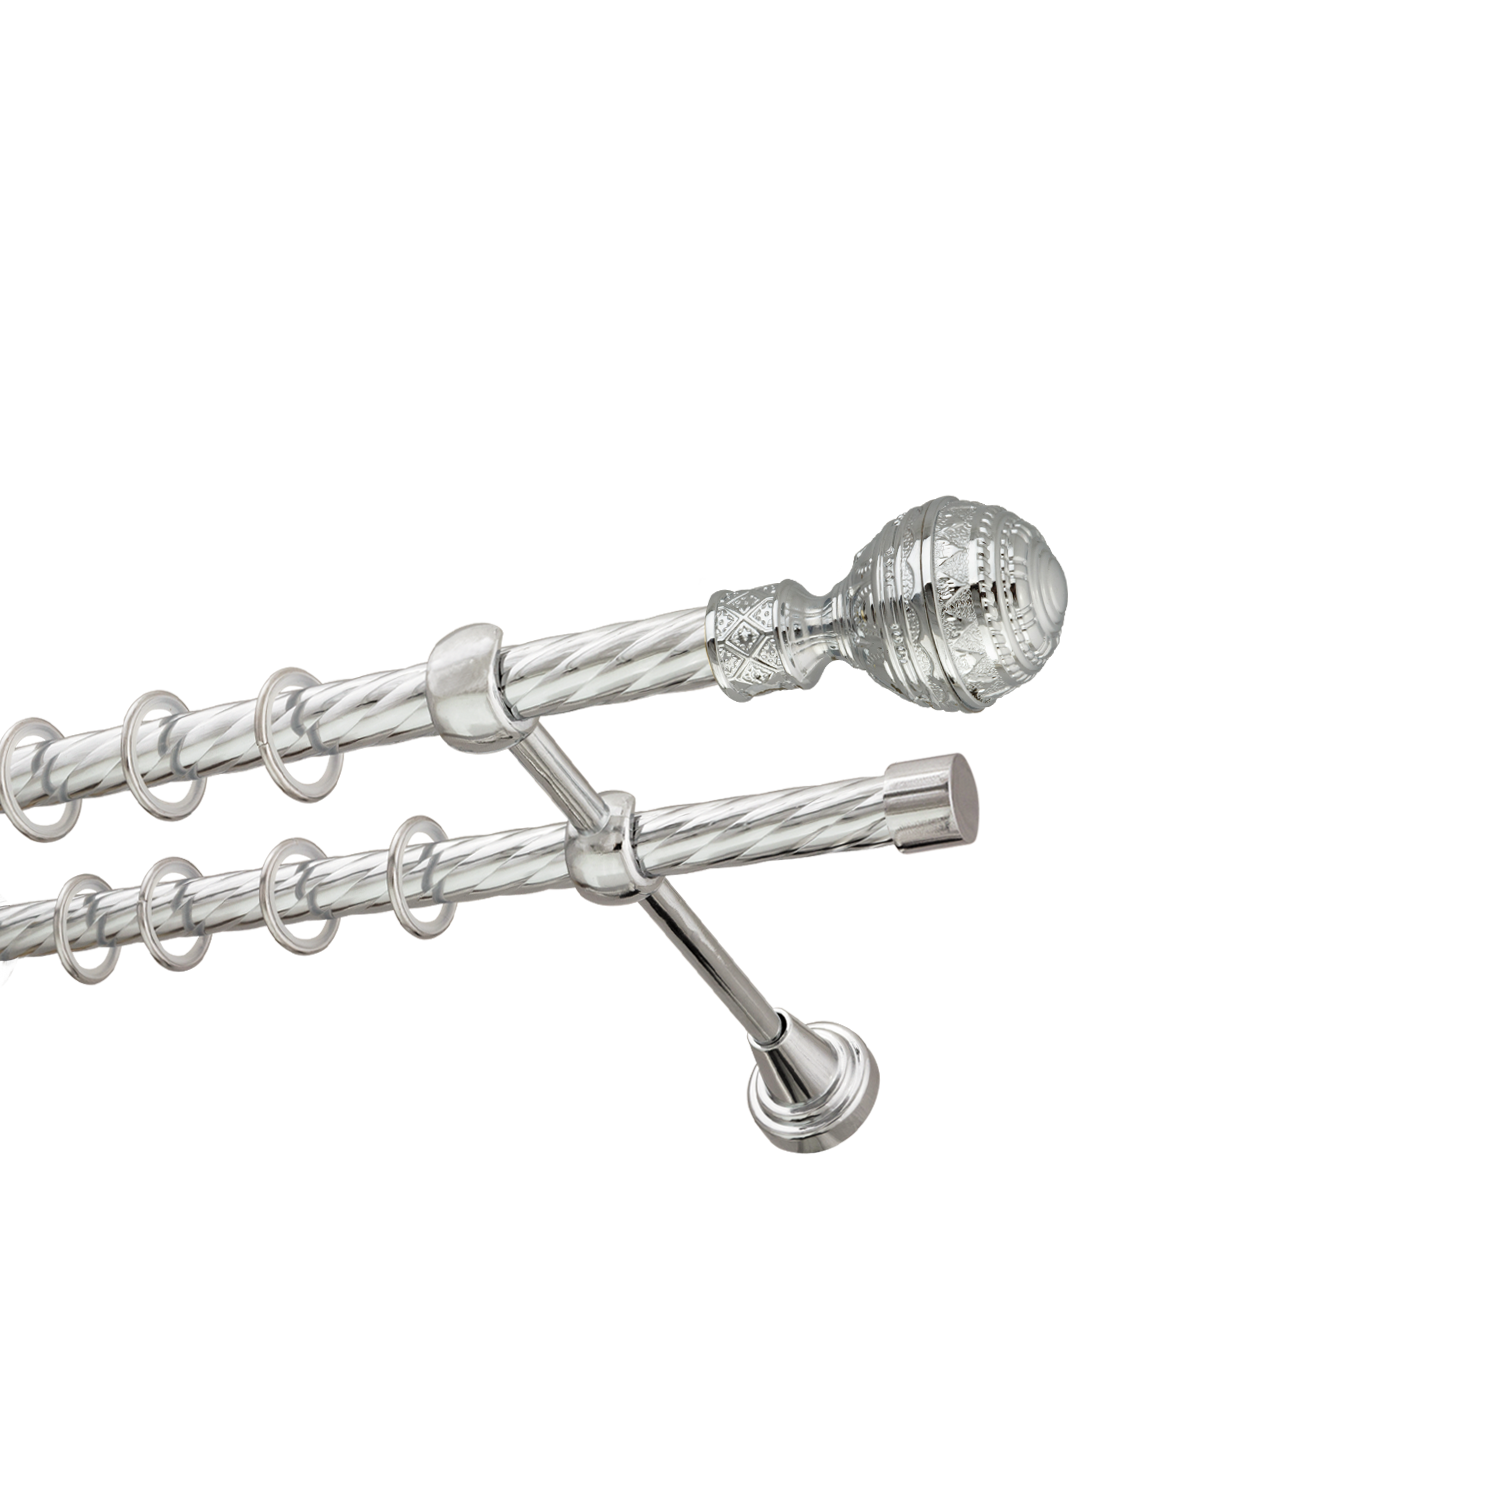 Металлический карниз для штор Роял, двухрядный 16/16 мм, серебро, витая штанга, длина 240 см